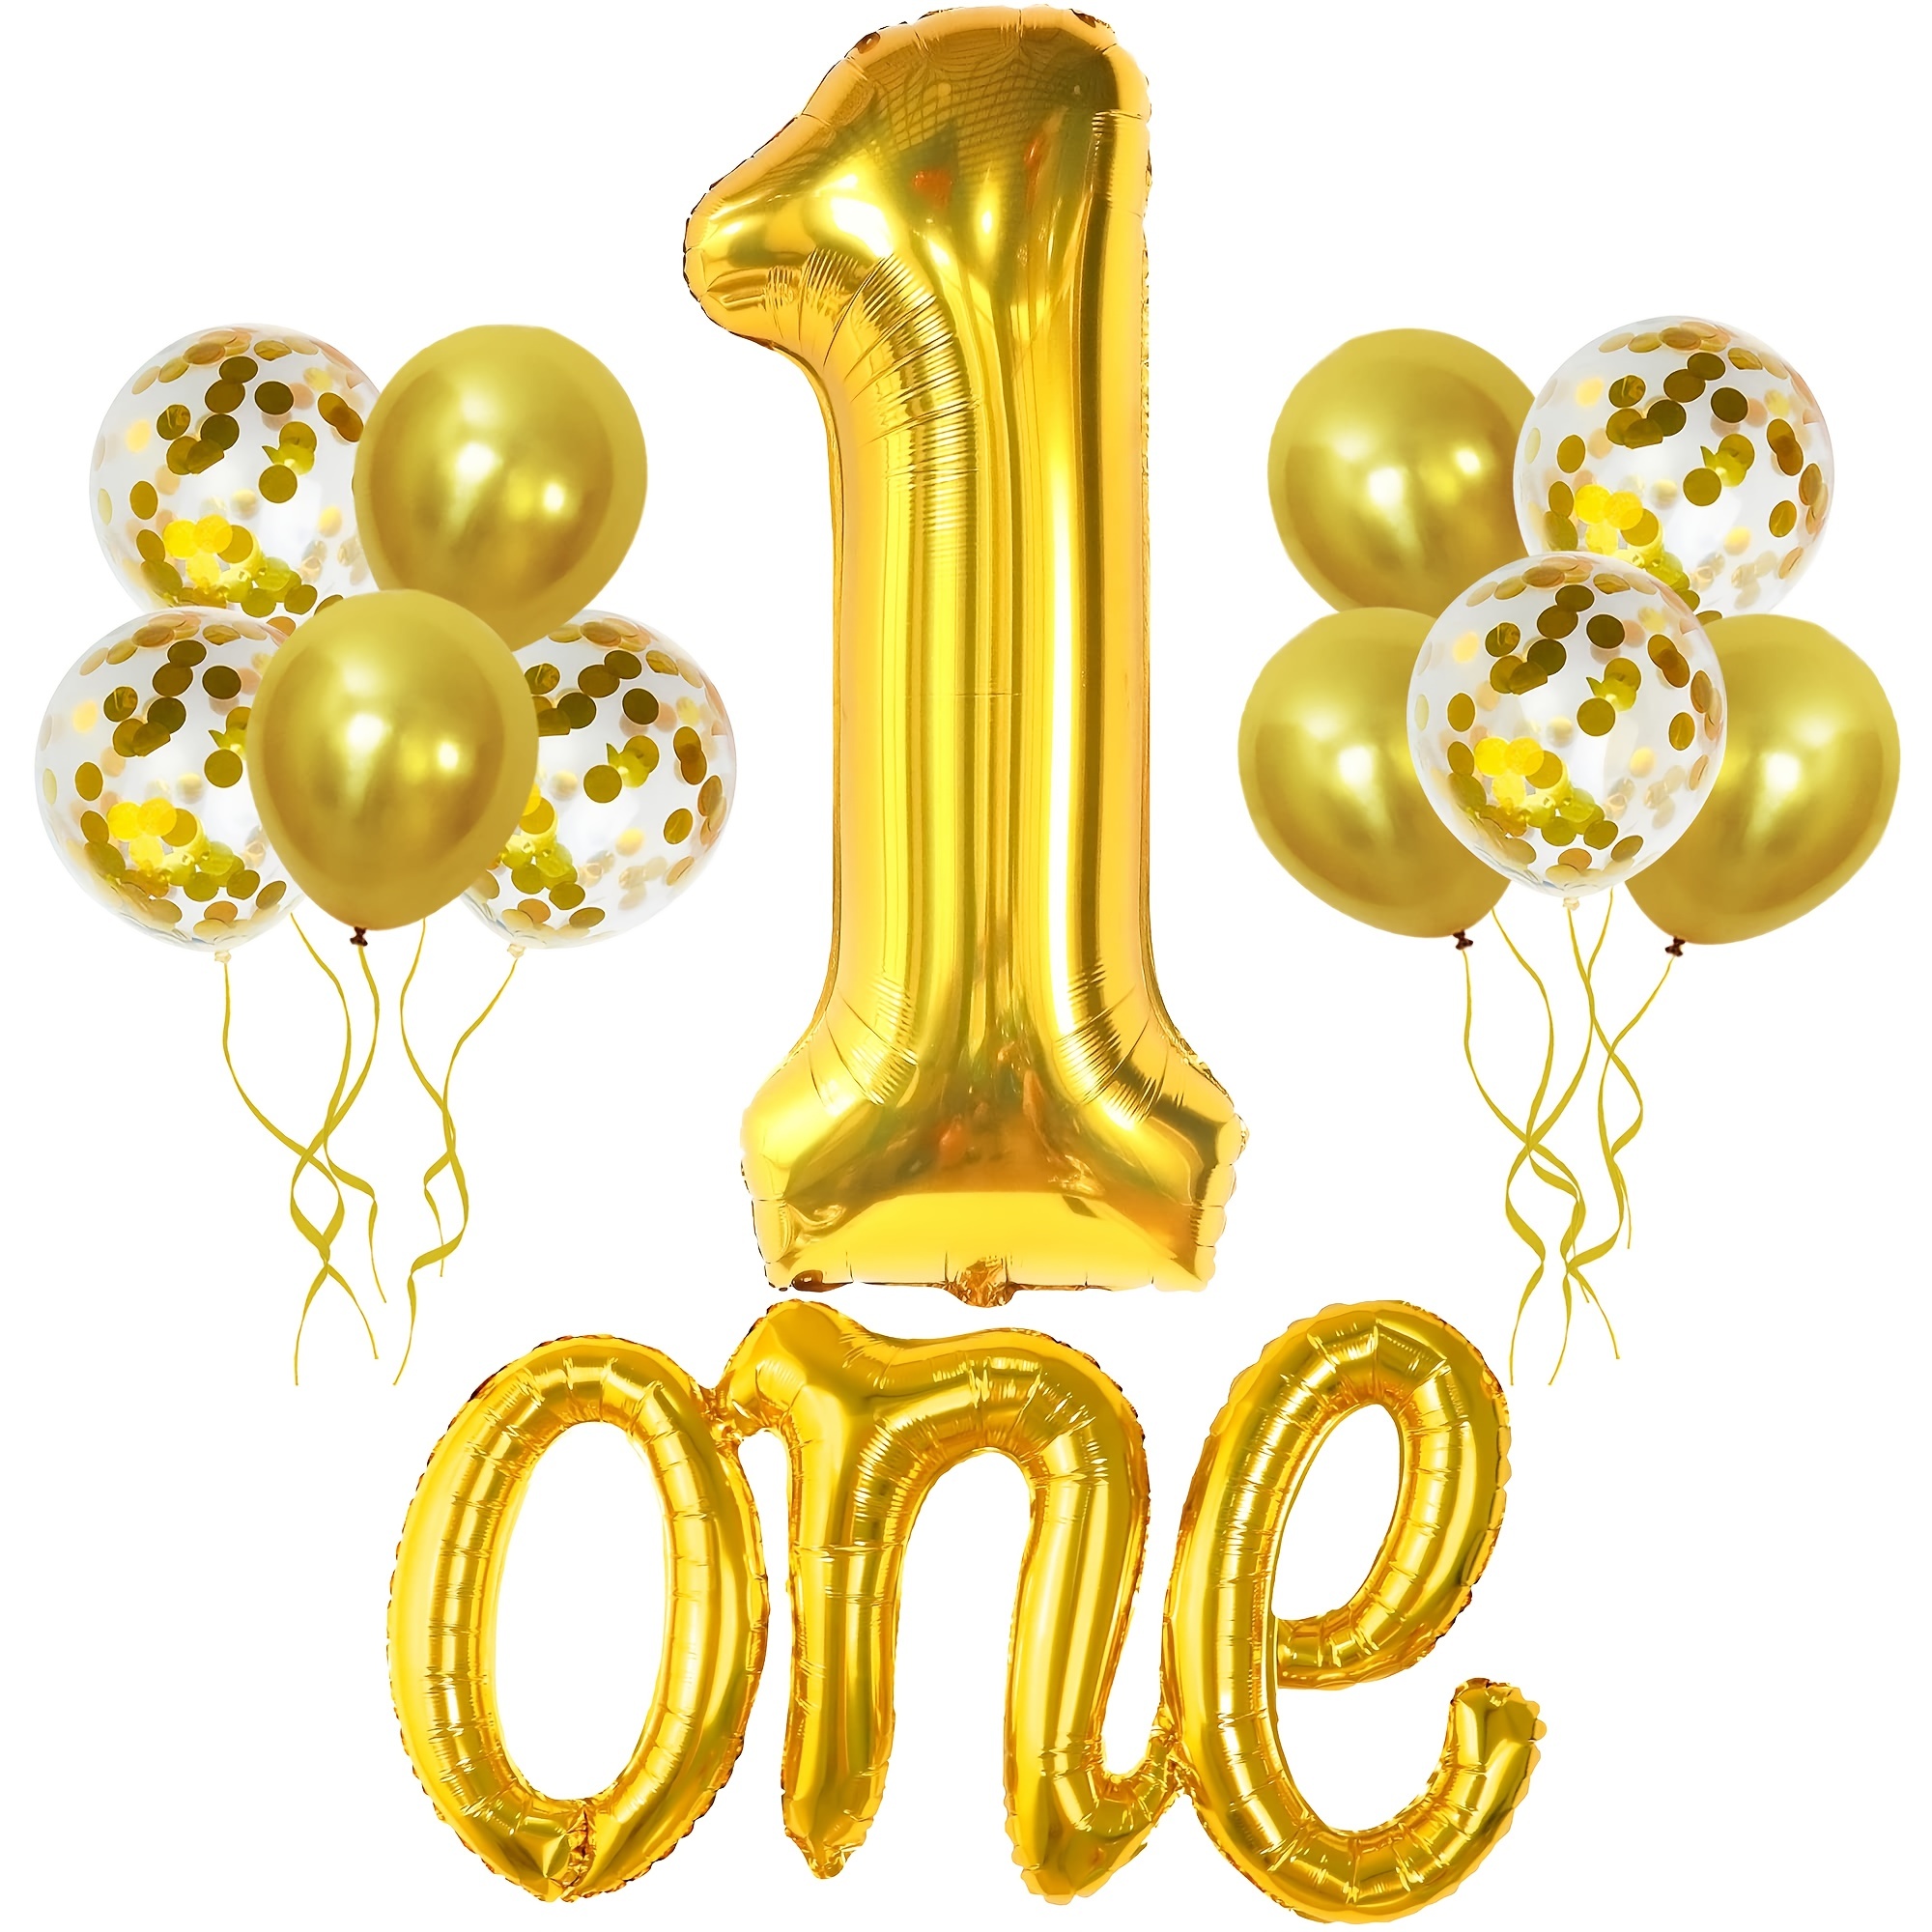 1 año con globo dorado. la celebración del aniversario. los globos